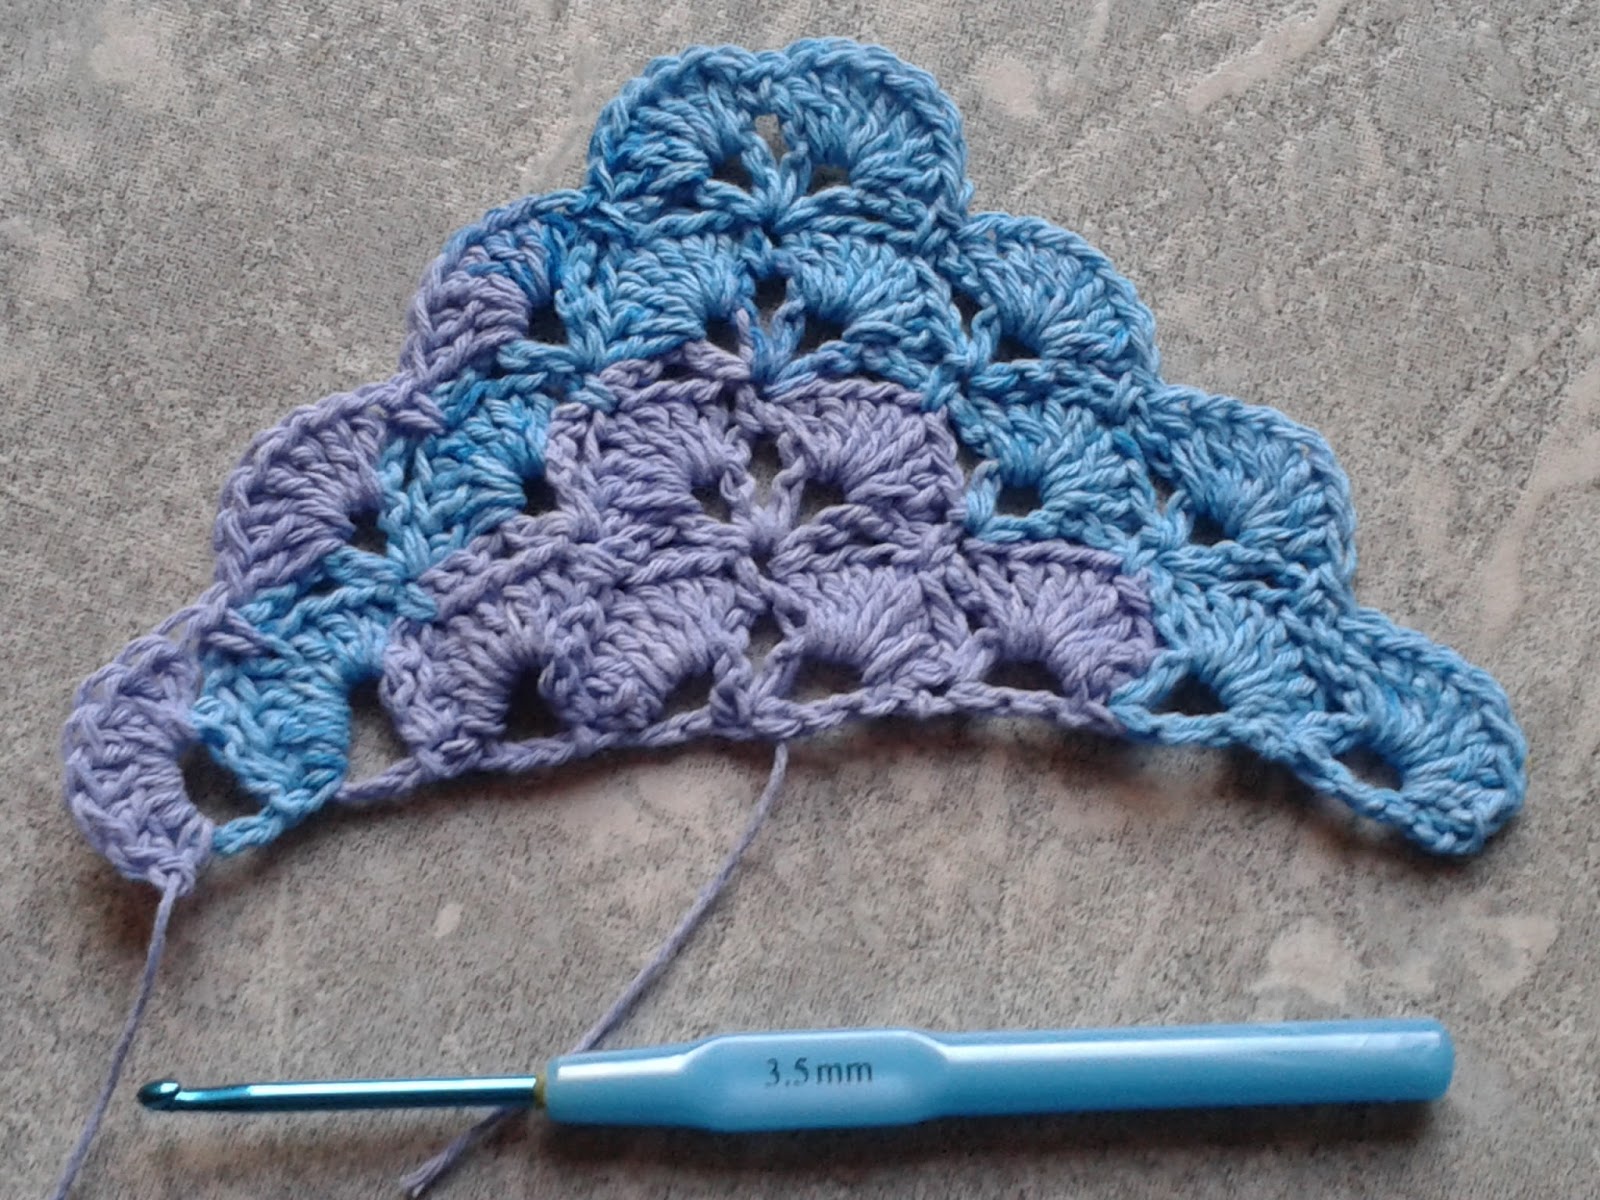 funkycrochet: Free crochet pattern: 10001 Triangle shawl